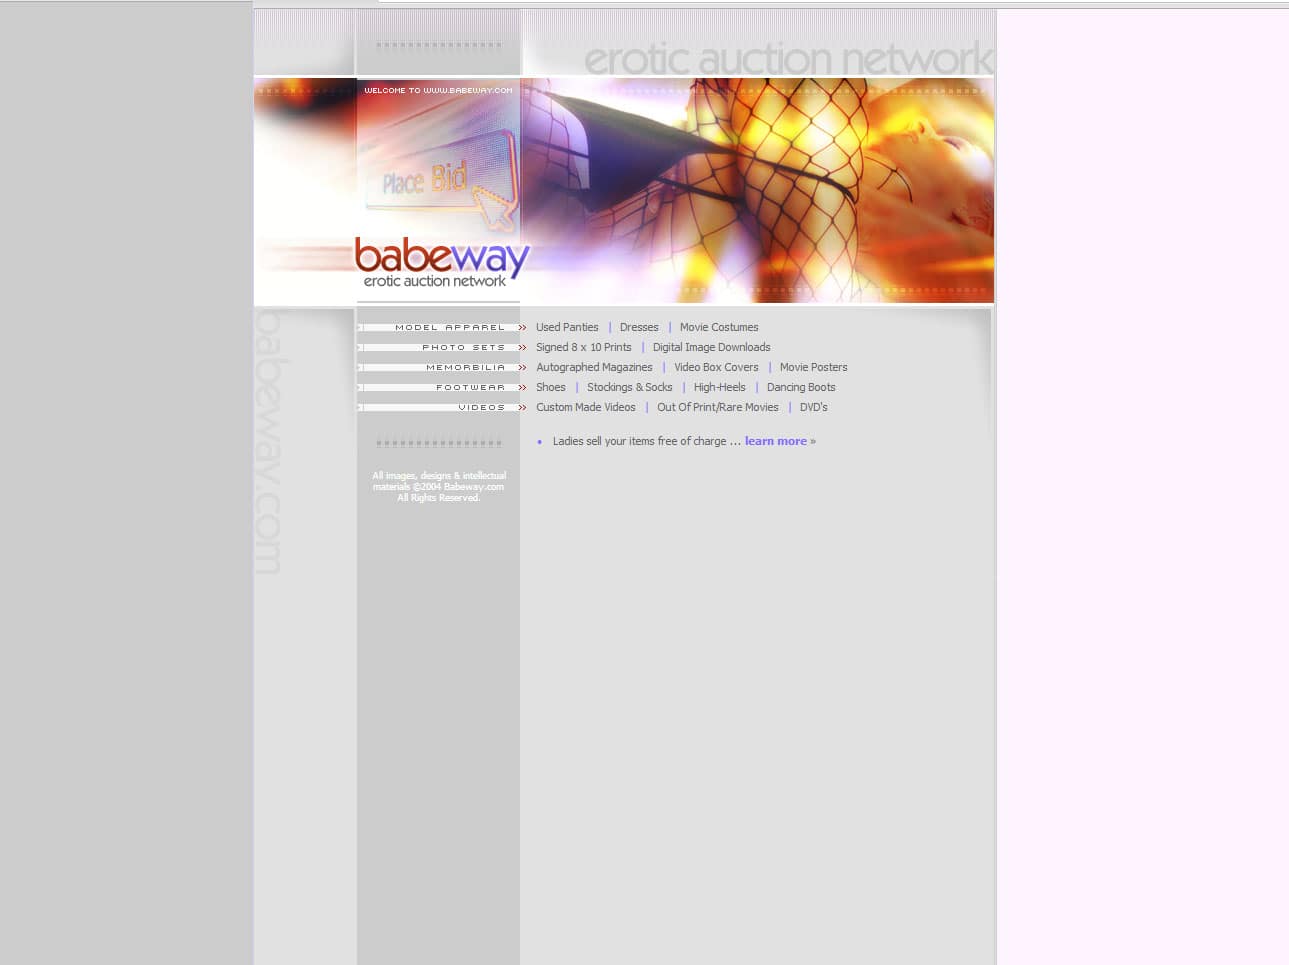 Babeway.com